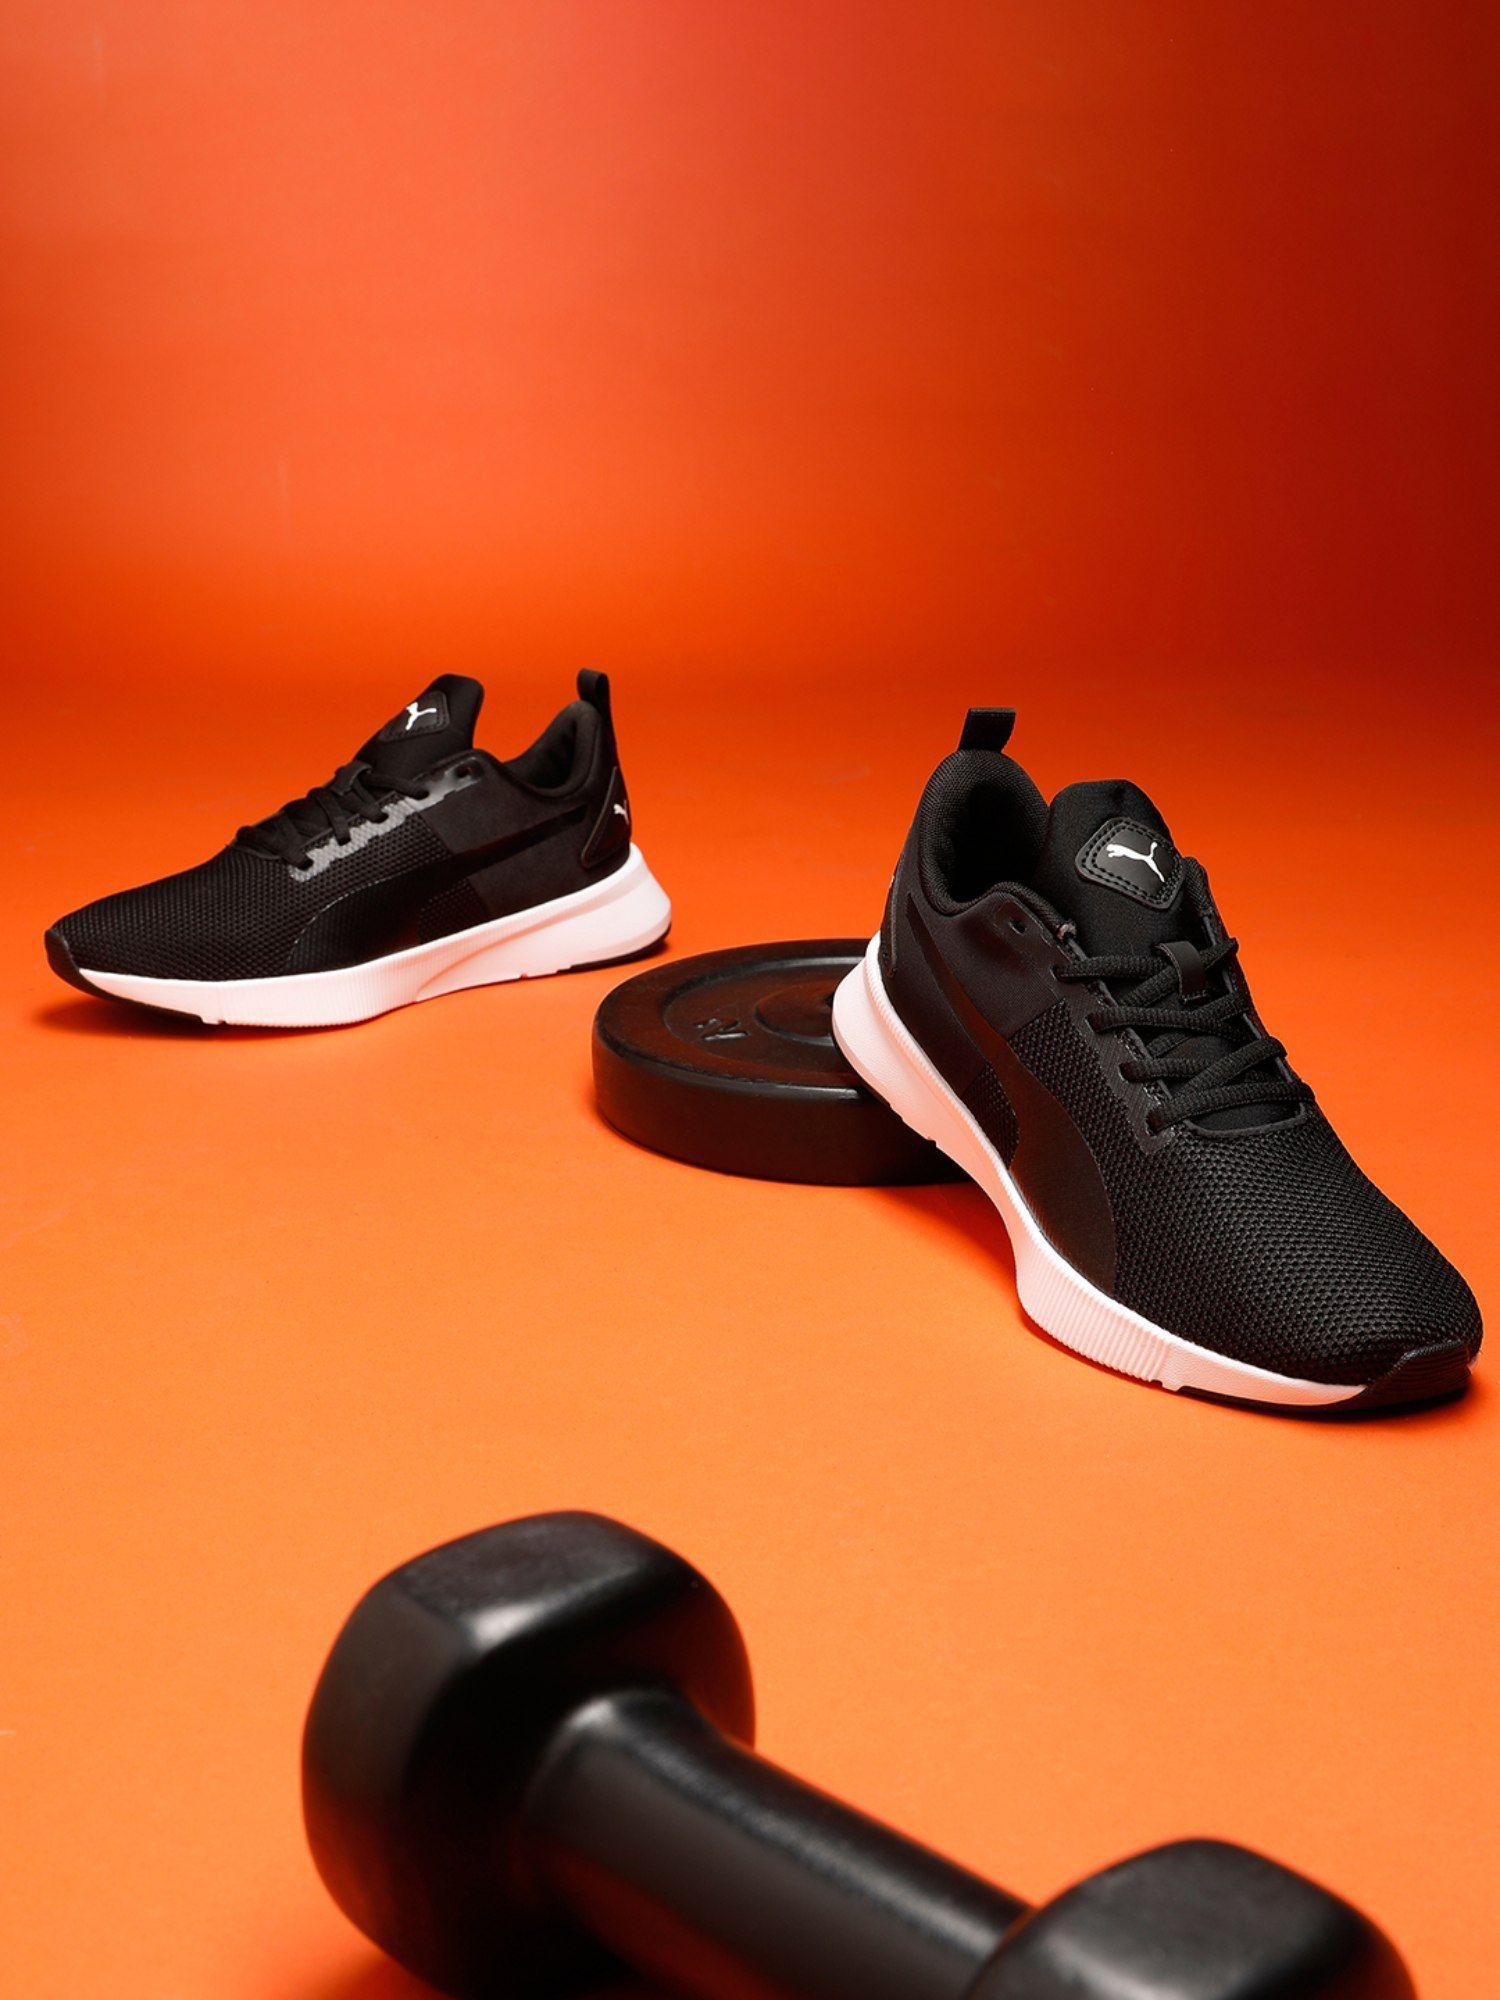 flyer runner softfoam boys' training unisex black sports shoes